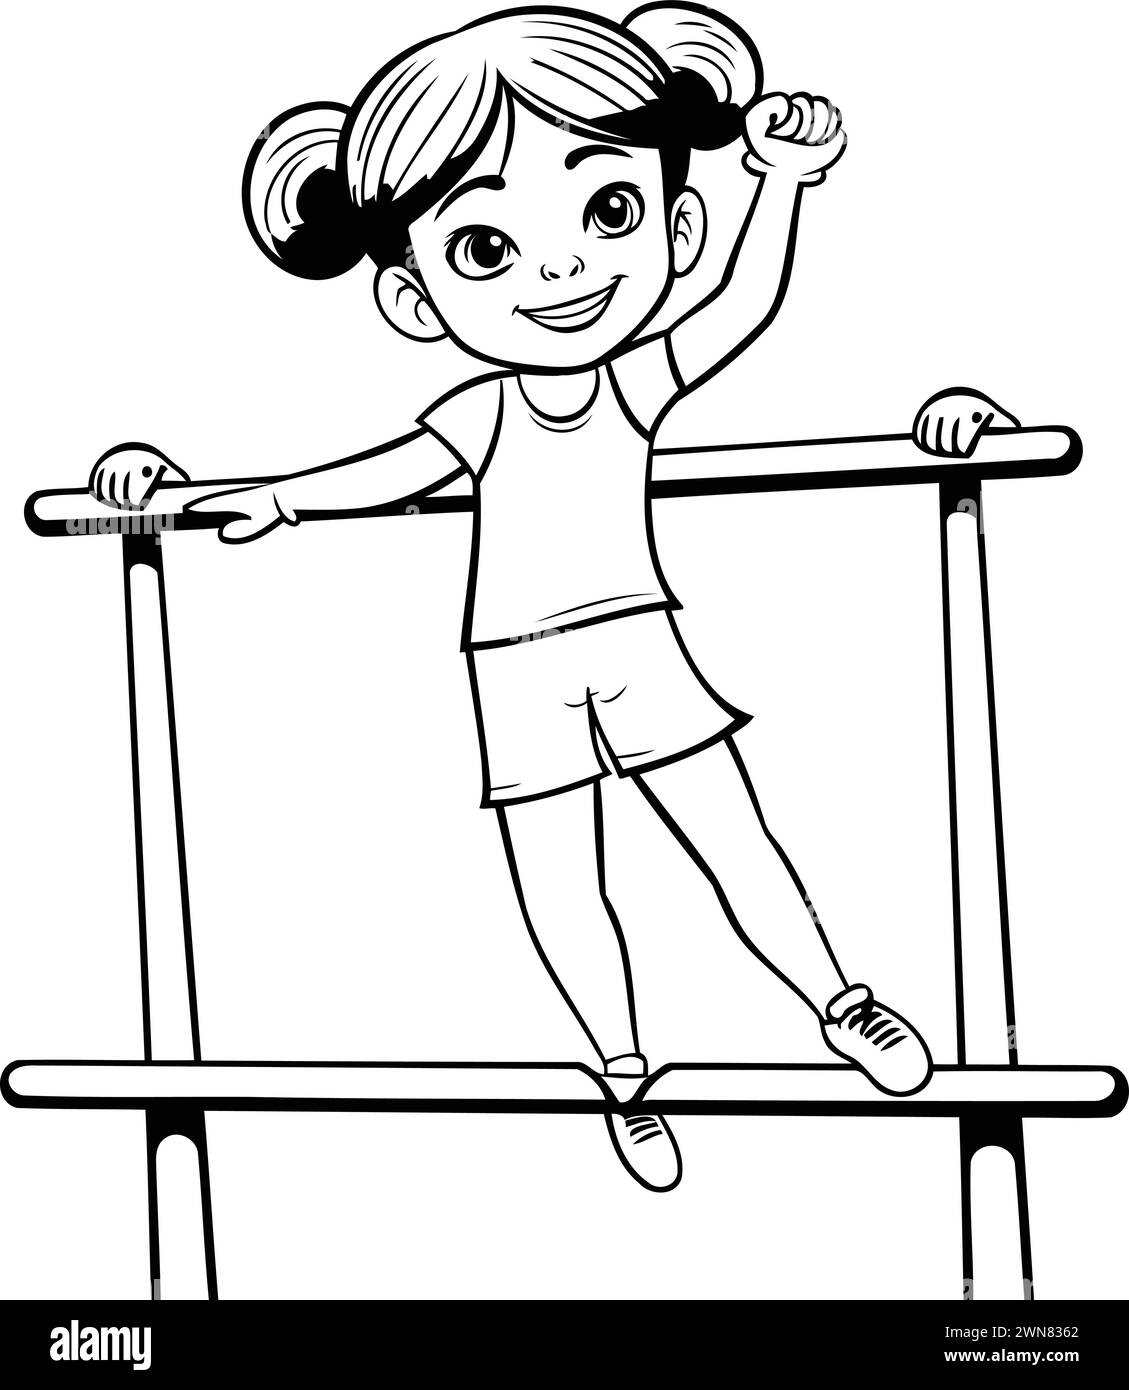 Little girl doing pull ups on parallel bars. Black and white vector illustration. Stock Vector